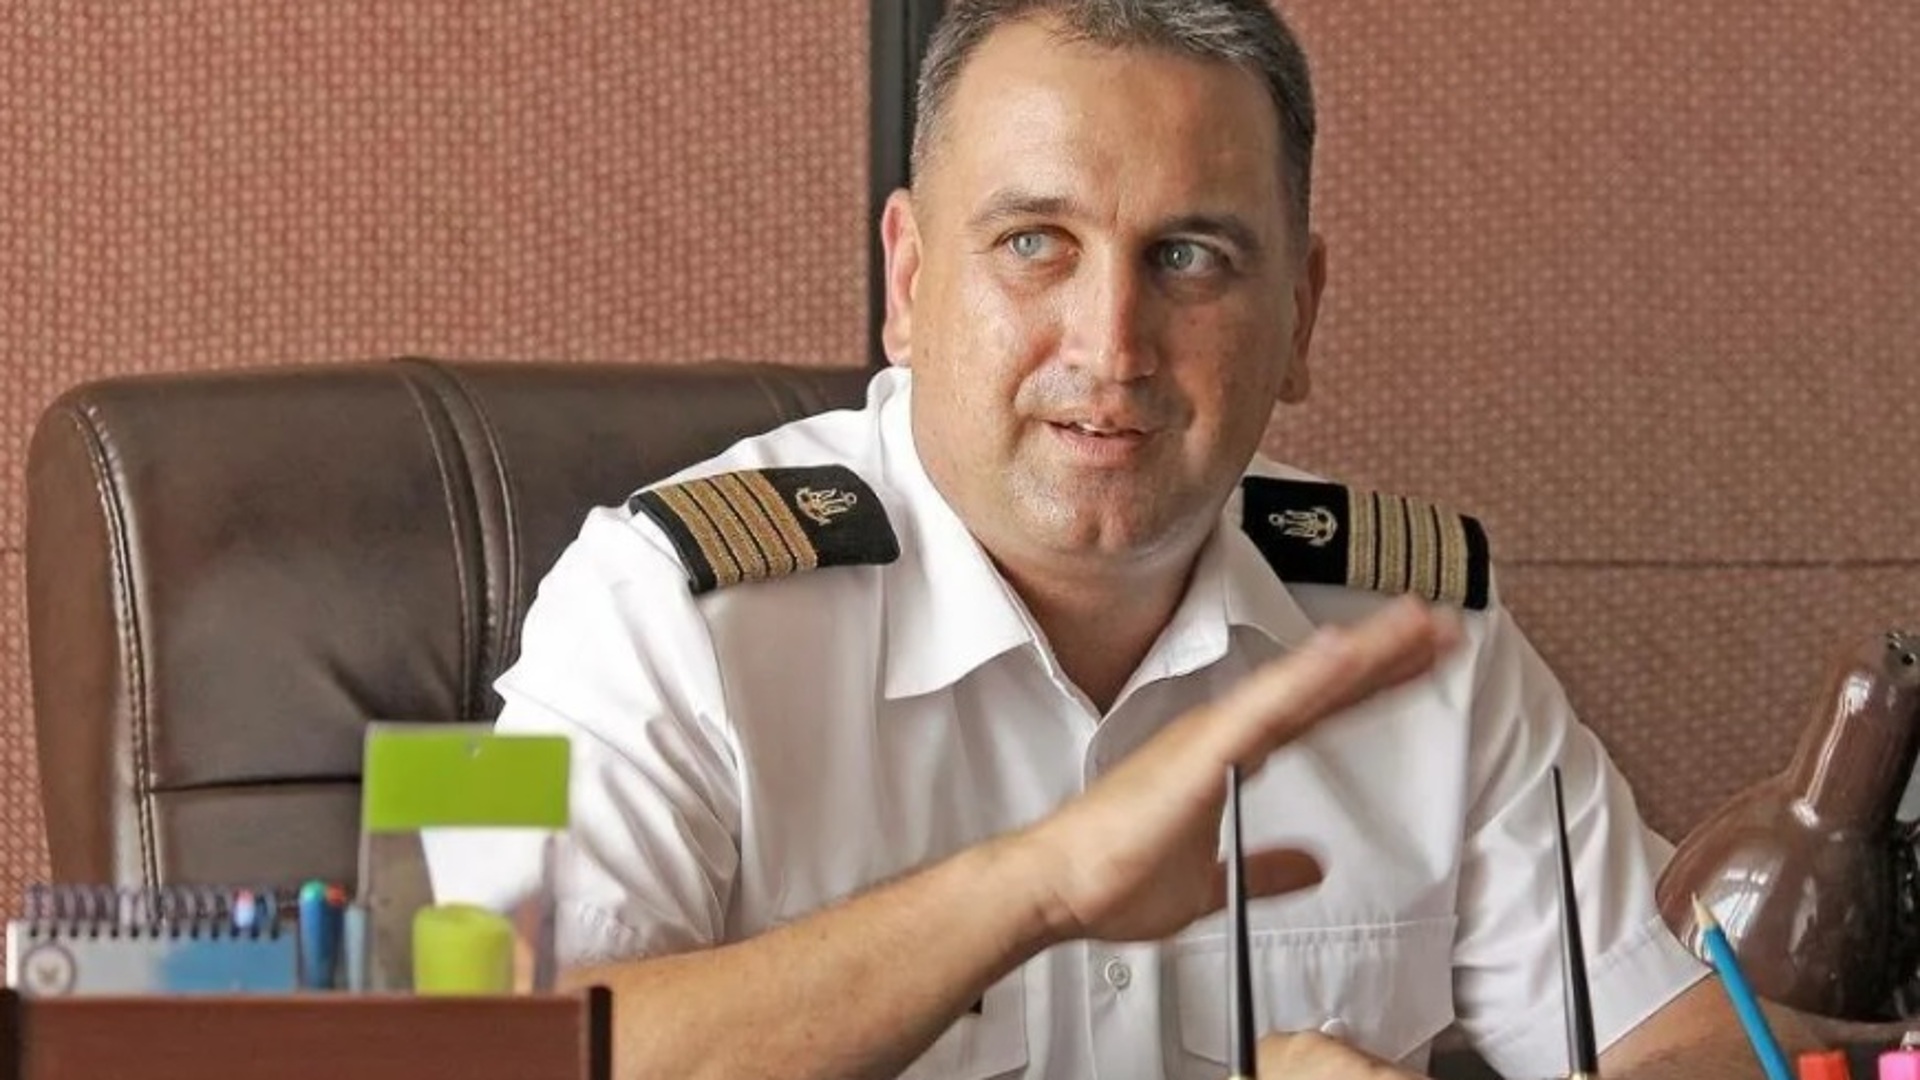 Экс-командующий ВМС Украины Воронченко объявлен в розыск - МВД РФ